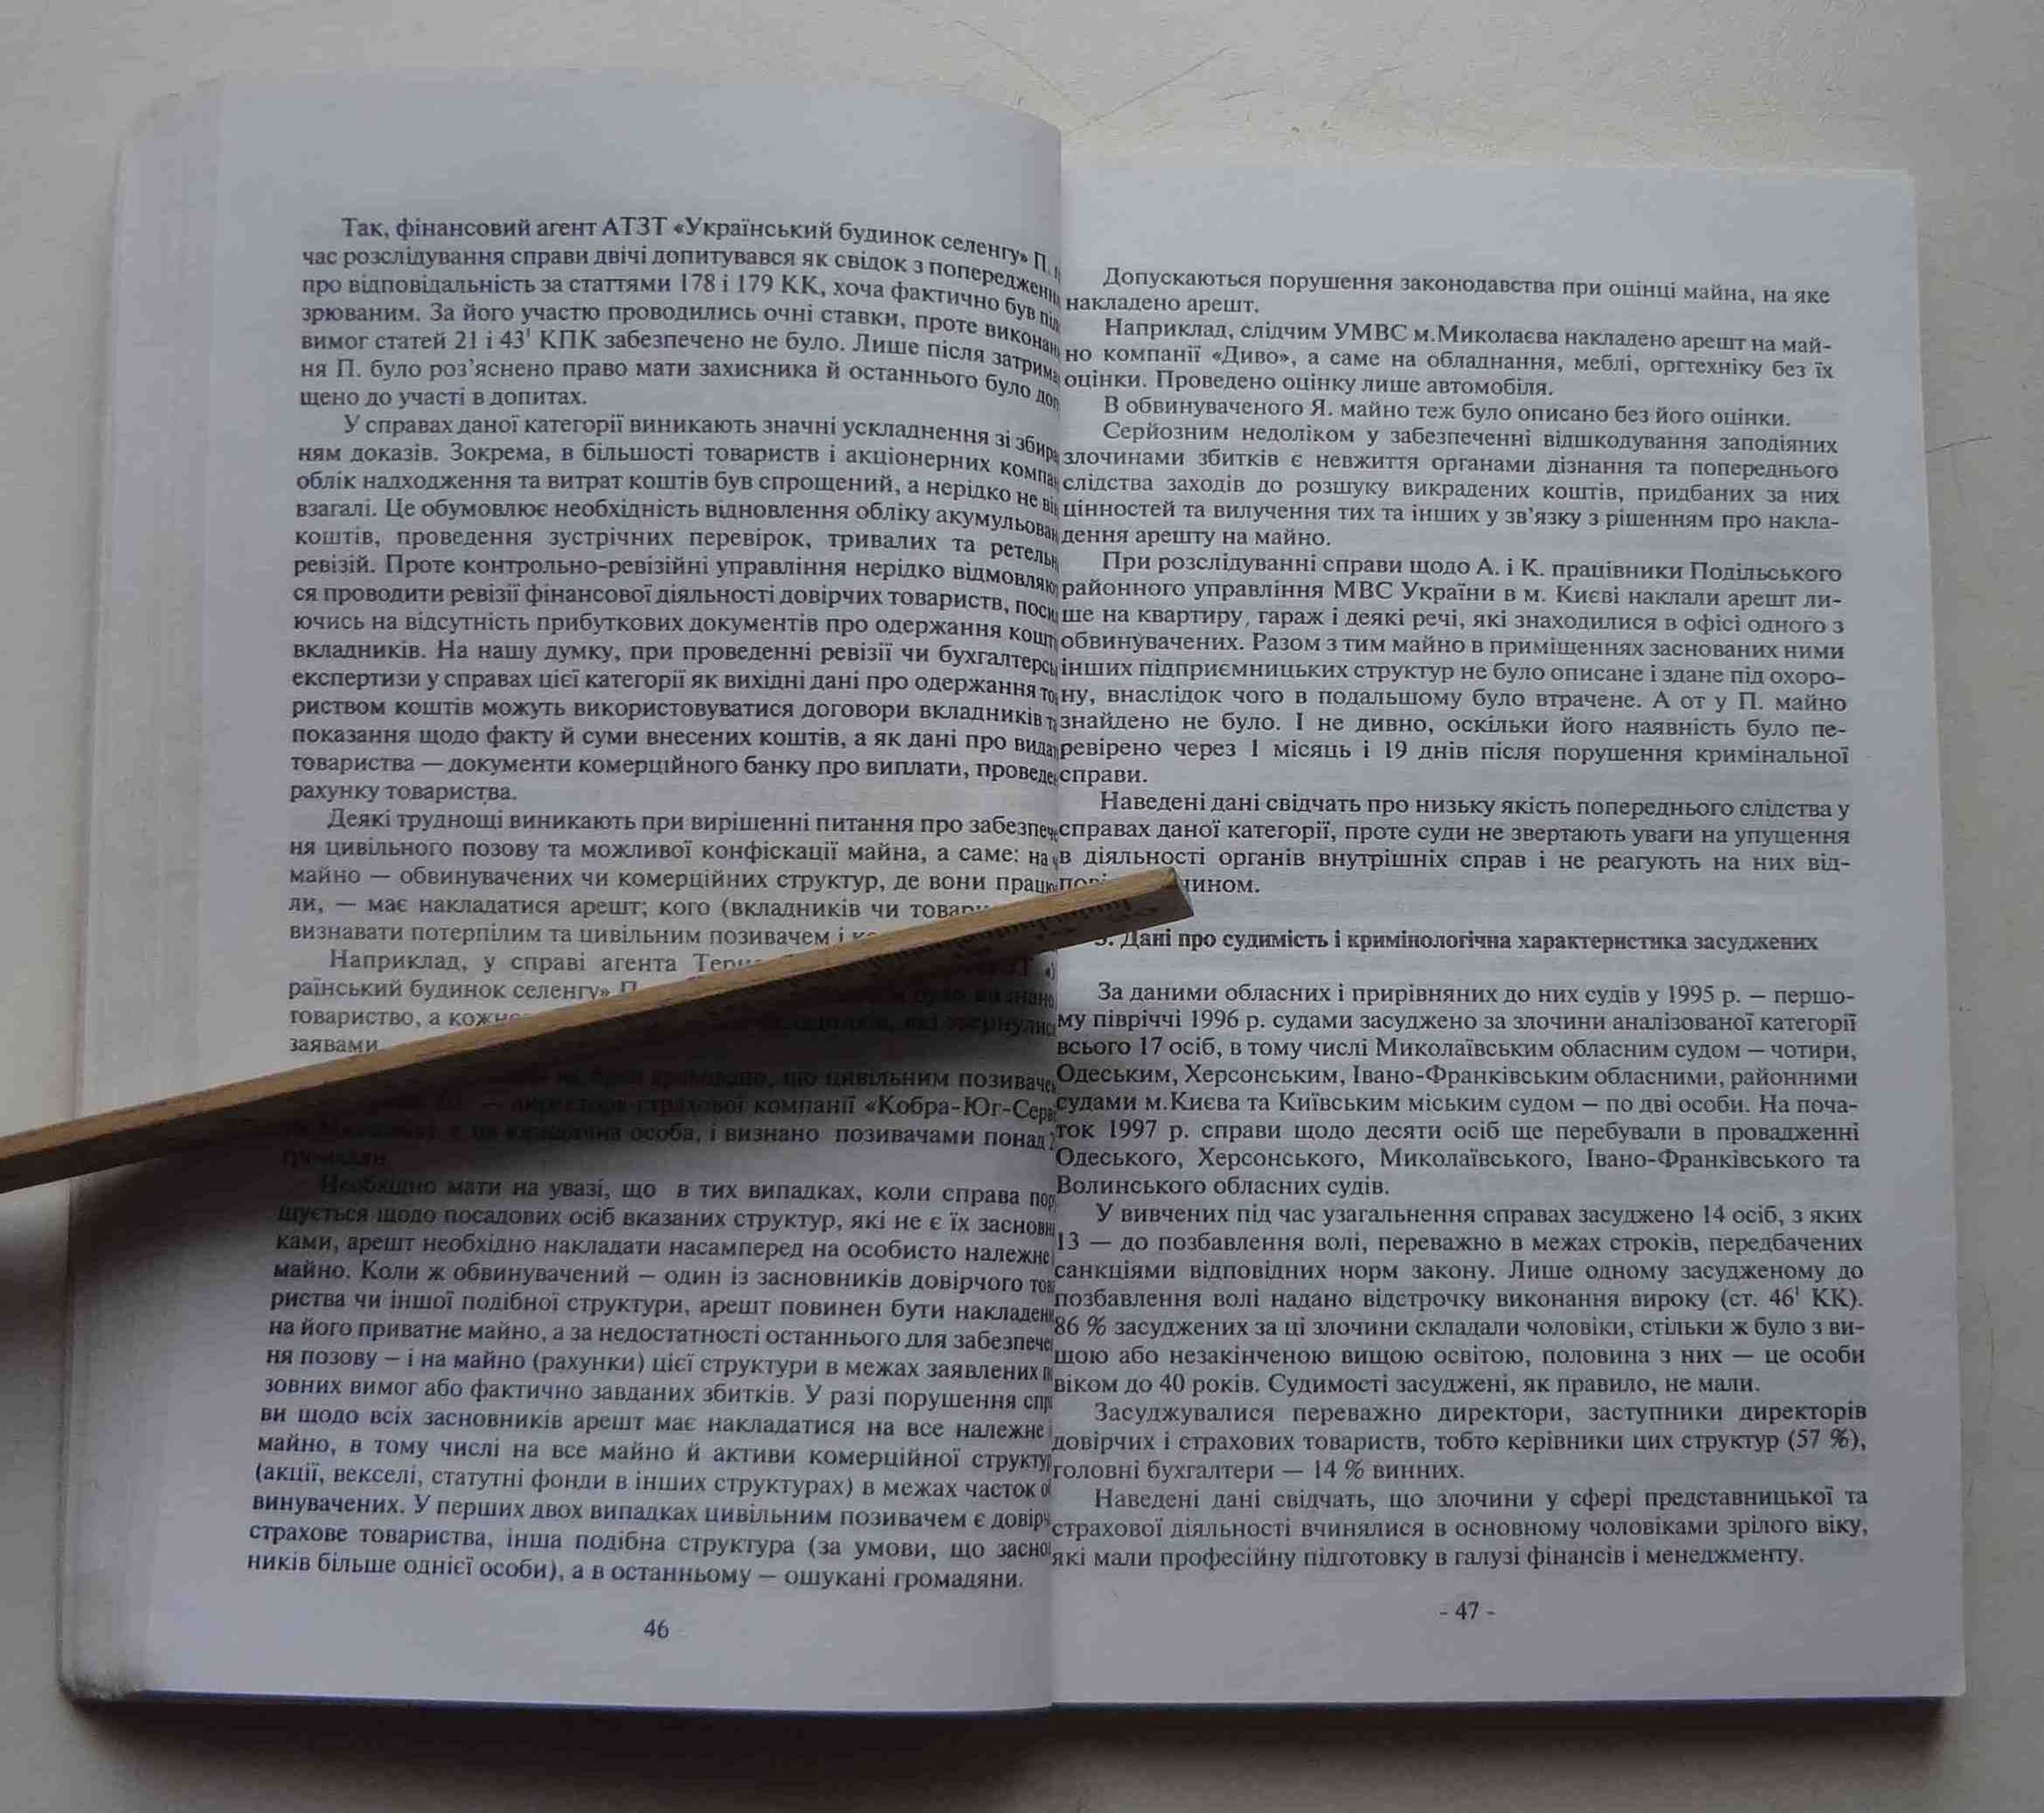 Книга Коментар судової практики Постанови Пленуму ВСУ 1995-1997